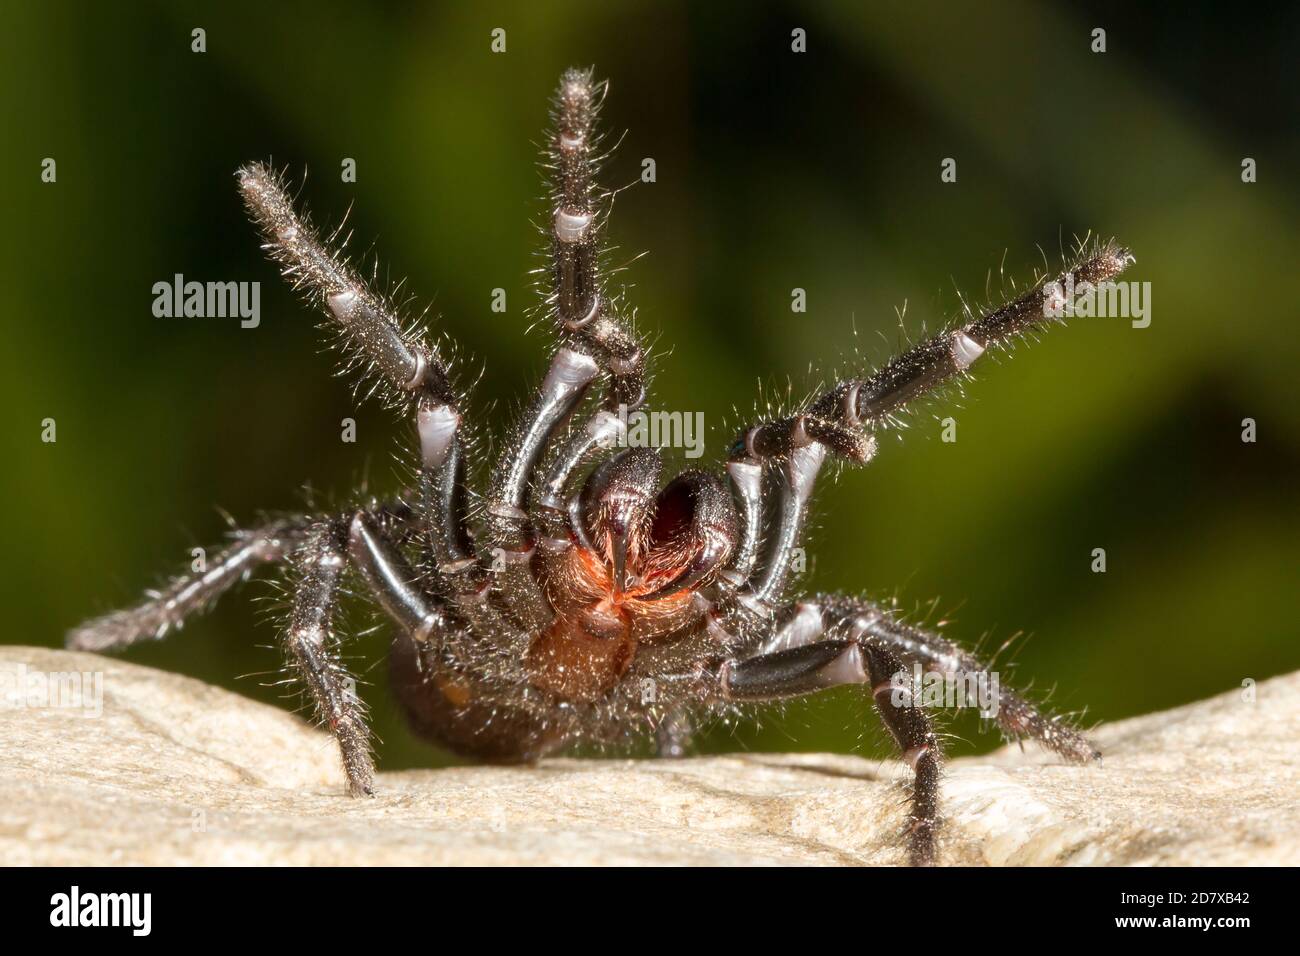 Sydney Funnel-web Spider sur la défensive Banque D'Images